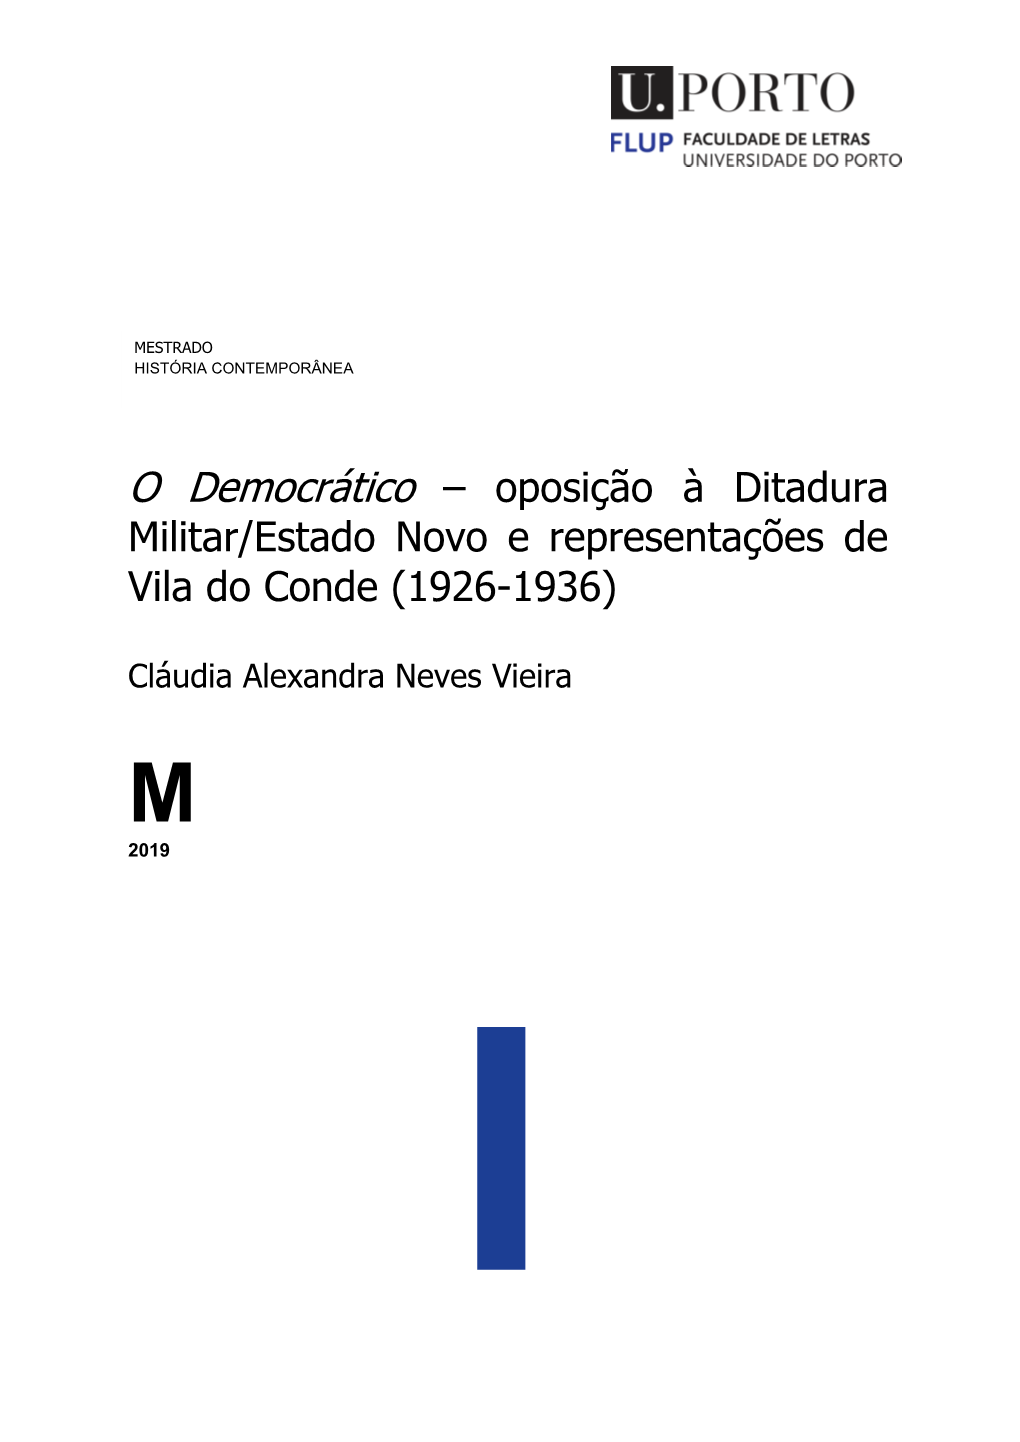 Militar/Estado Novo E Representações De Vila Do Conde (1926-1936)